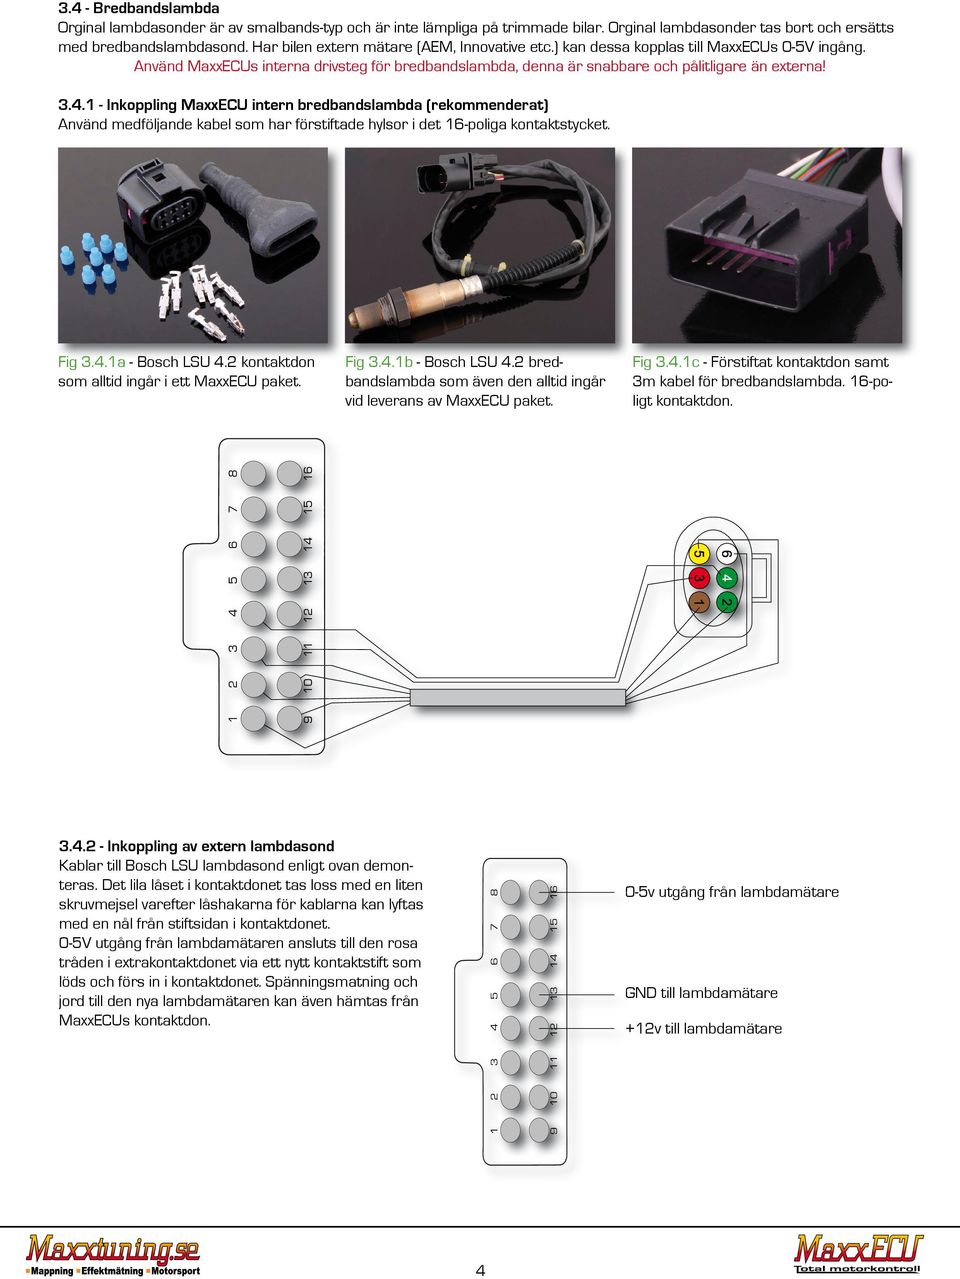 1 - Inkoppling MaxxECU intern bredbandslambda (rekommenderat) Använd medföljande kabel som har förstiftade hylsor i det 16-poliga kontaktstycket. Fig 3.4.1a - Bosch LSU 4.